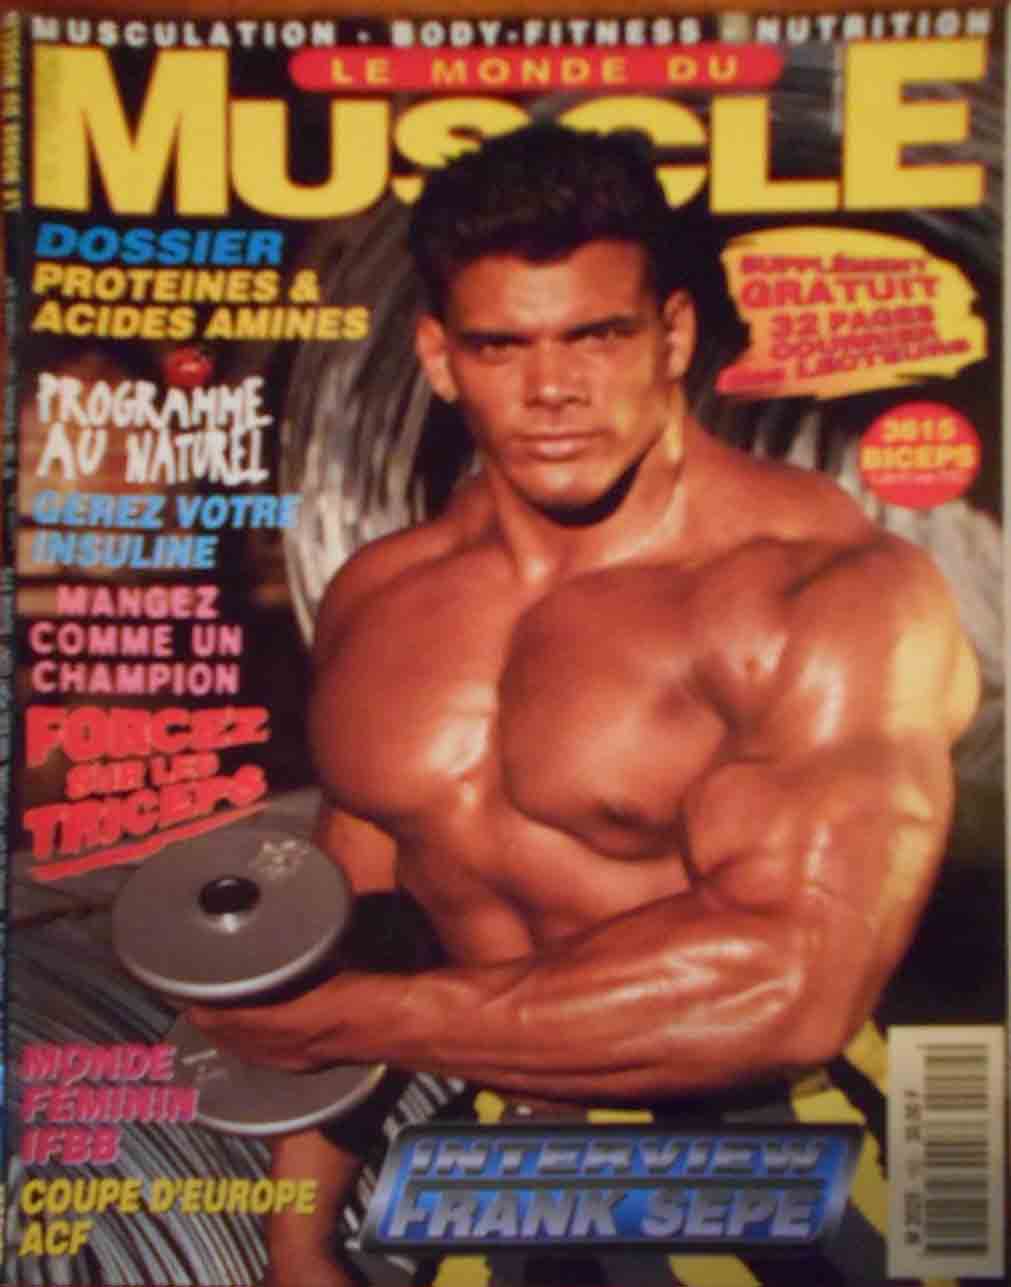 Le Monde du Muscle # 152 magazine back issue Le Monde du Muscle magizine back copy 